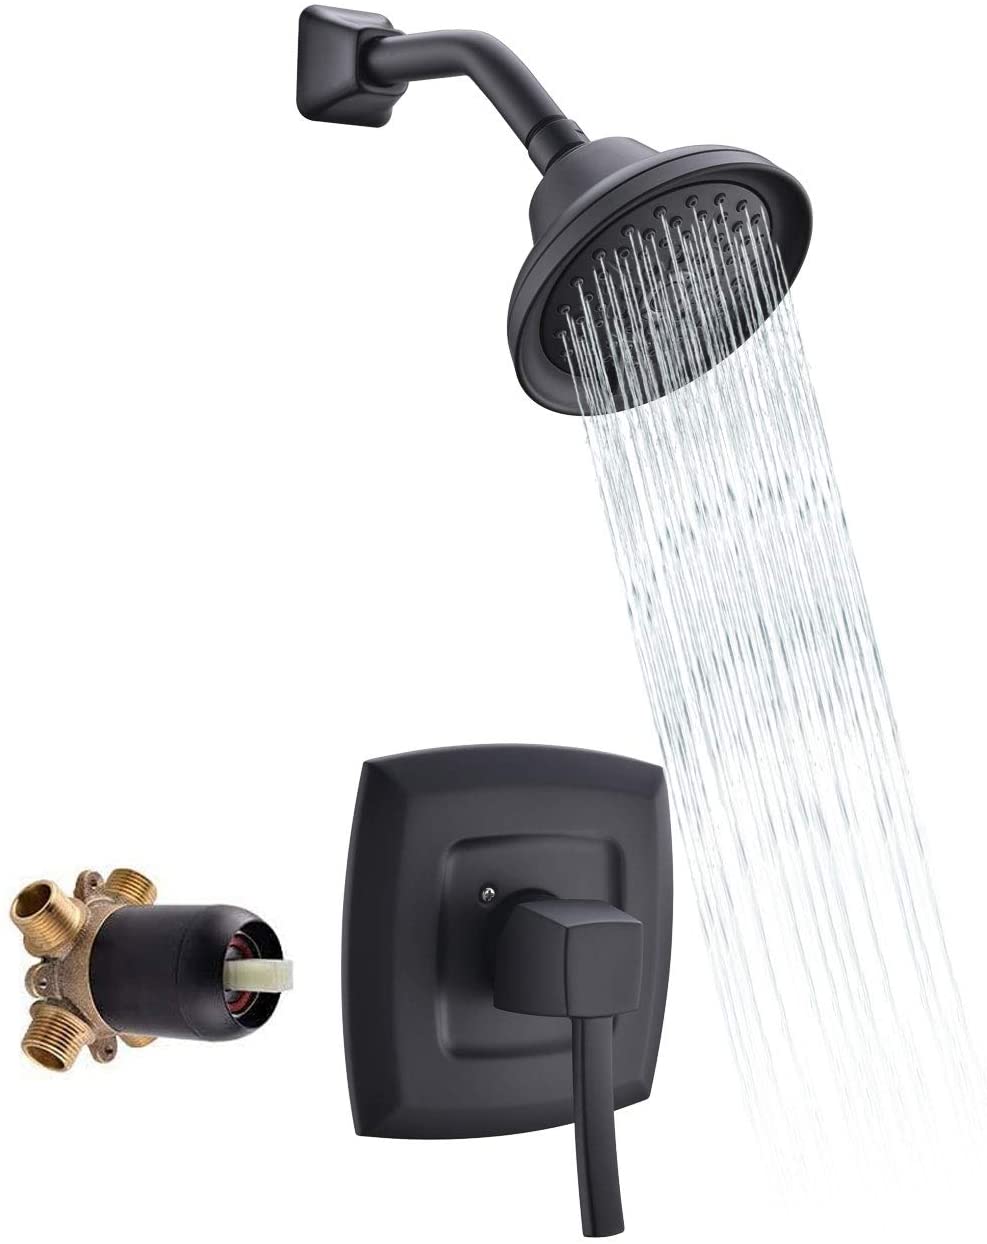 Conjuntos de torneiras de banheiro para chuveiros com efeito de chuva misturador de chuveiros ocultos Conjuntos de chuveiros de banho